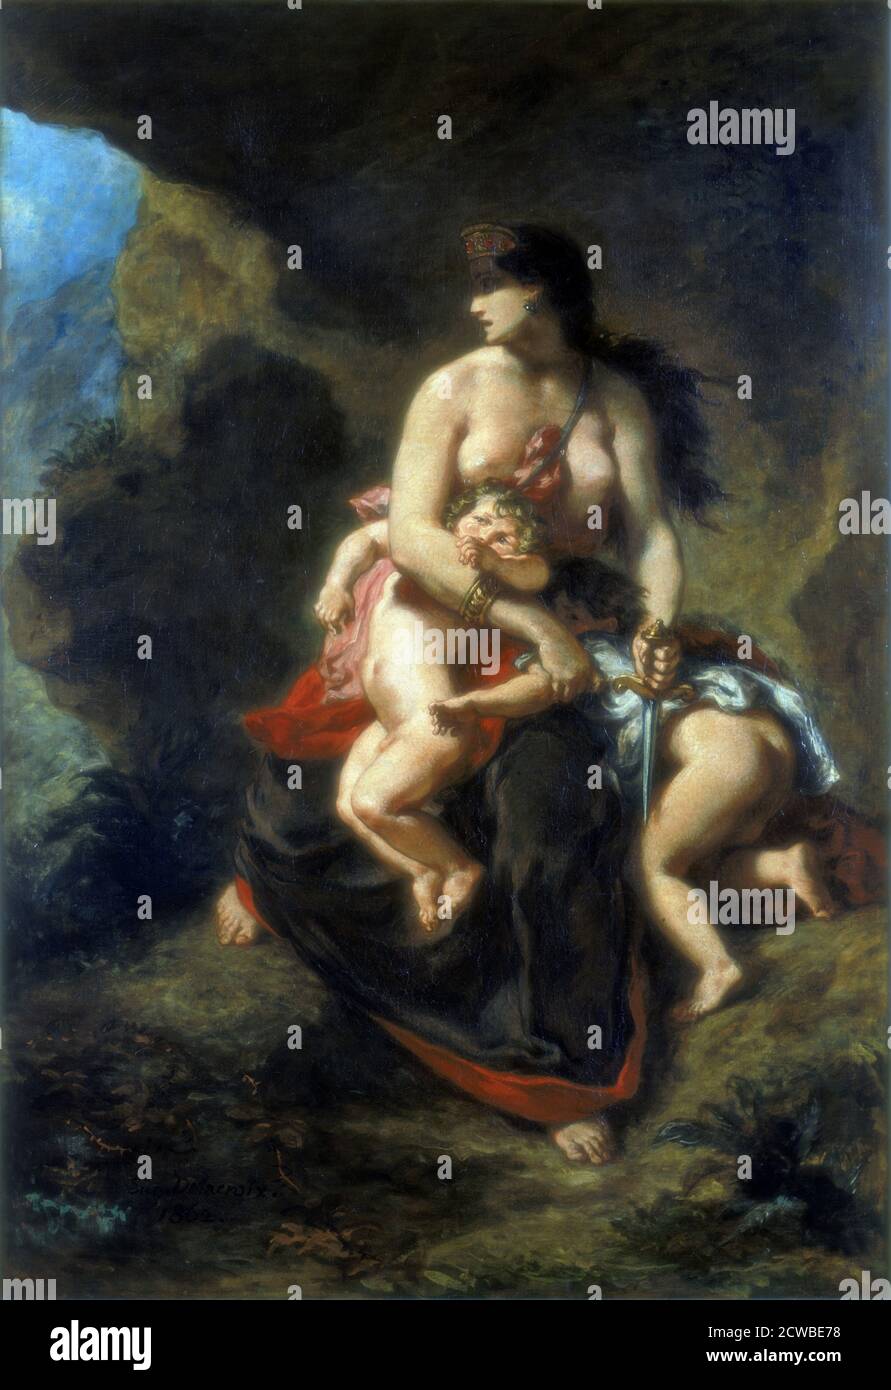 MEDEA, 1862. Artiste: Eugene Delacroix. Delacroix était un artiste romantique français considéré comme le chef de l'école romantique française. Banque D'Images